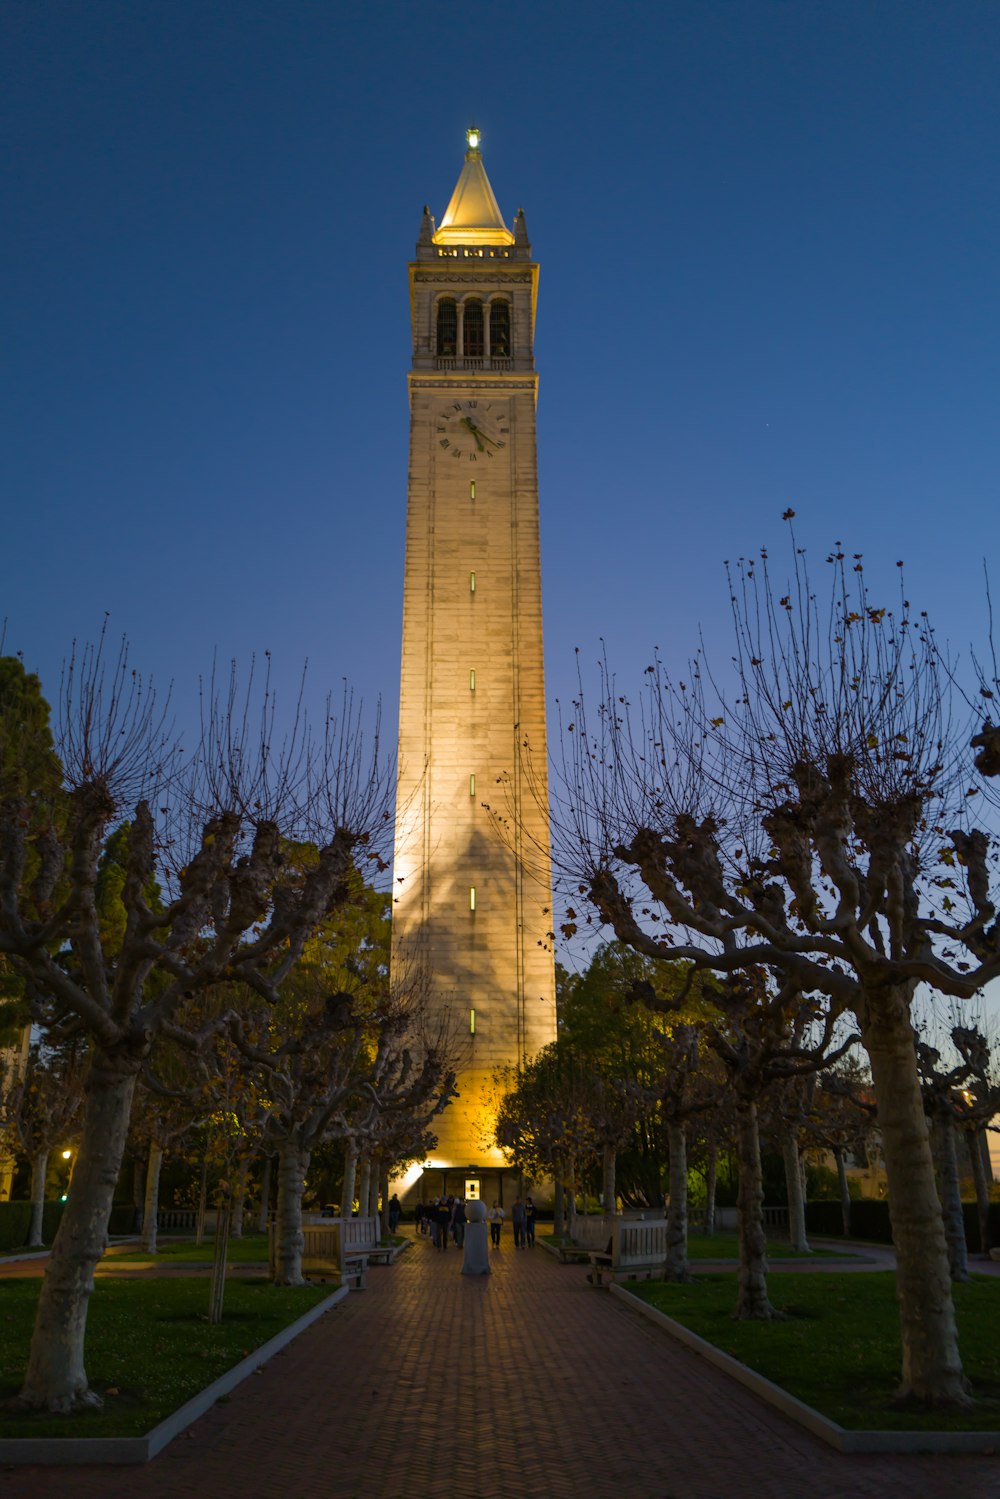 uma torre do relógio alta que se eleva sobre um parque cheio de árvores